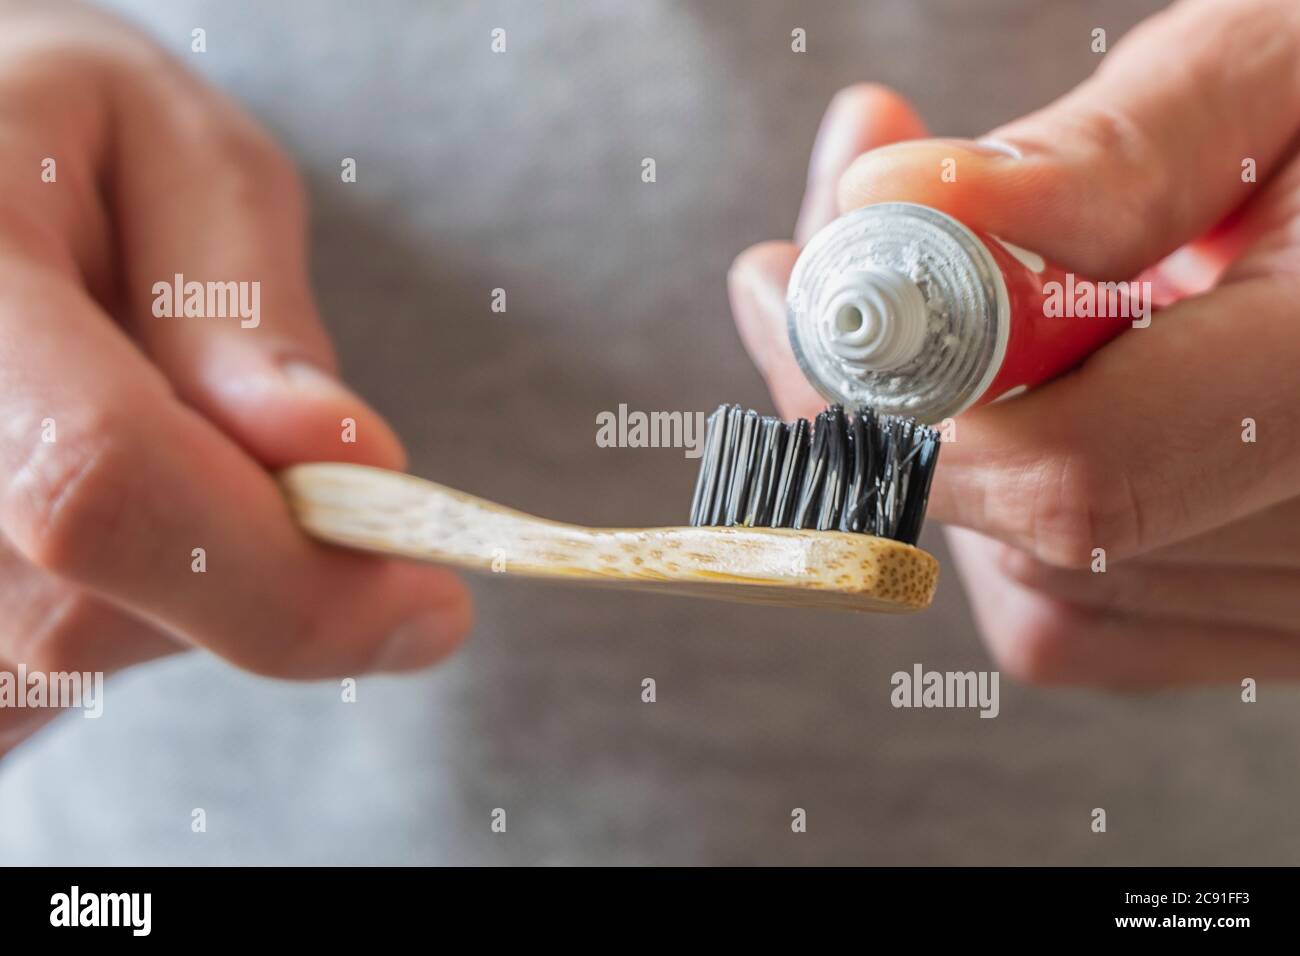 Manos masculinas aplicando pasta dental en un cepillo de dientes de bambú natural ecológico. Cero residuos en casa, artículos sin plástico Foto de stock